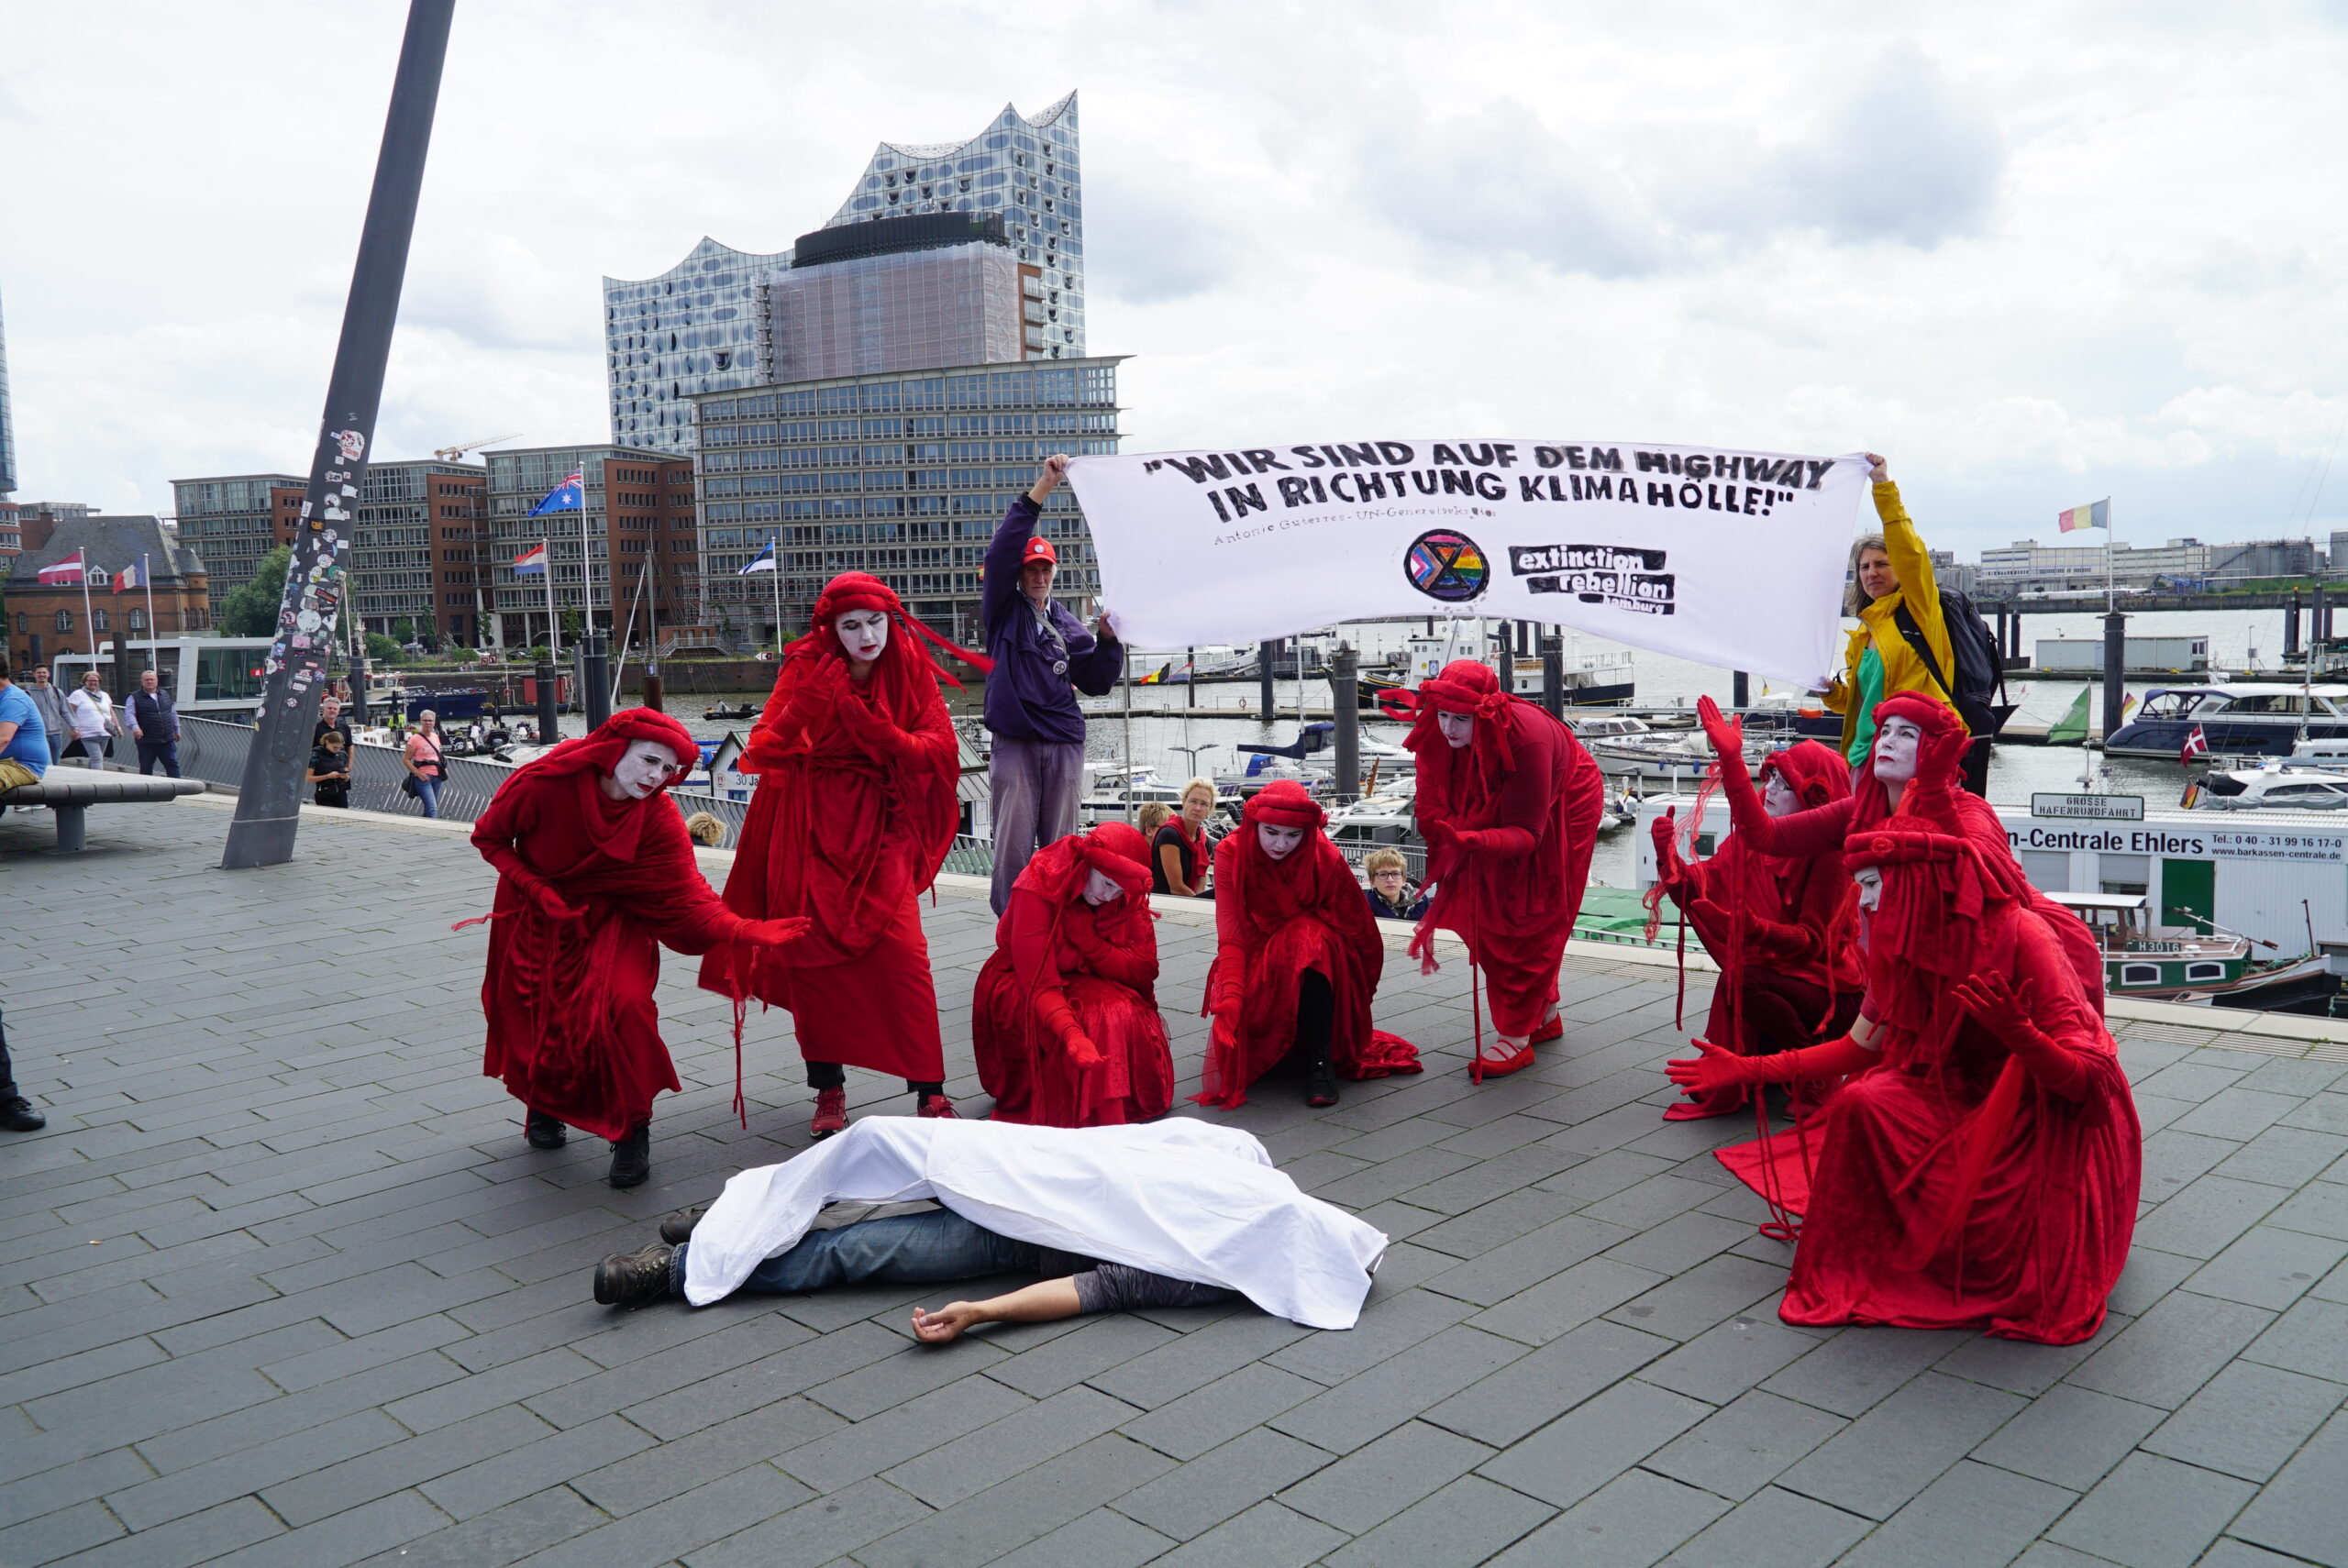 Die Aktivisten trugen rote Gewänder und legten Leichentücher über einen Mann und ein Baby.